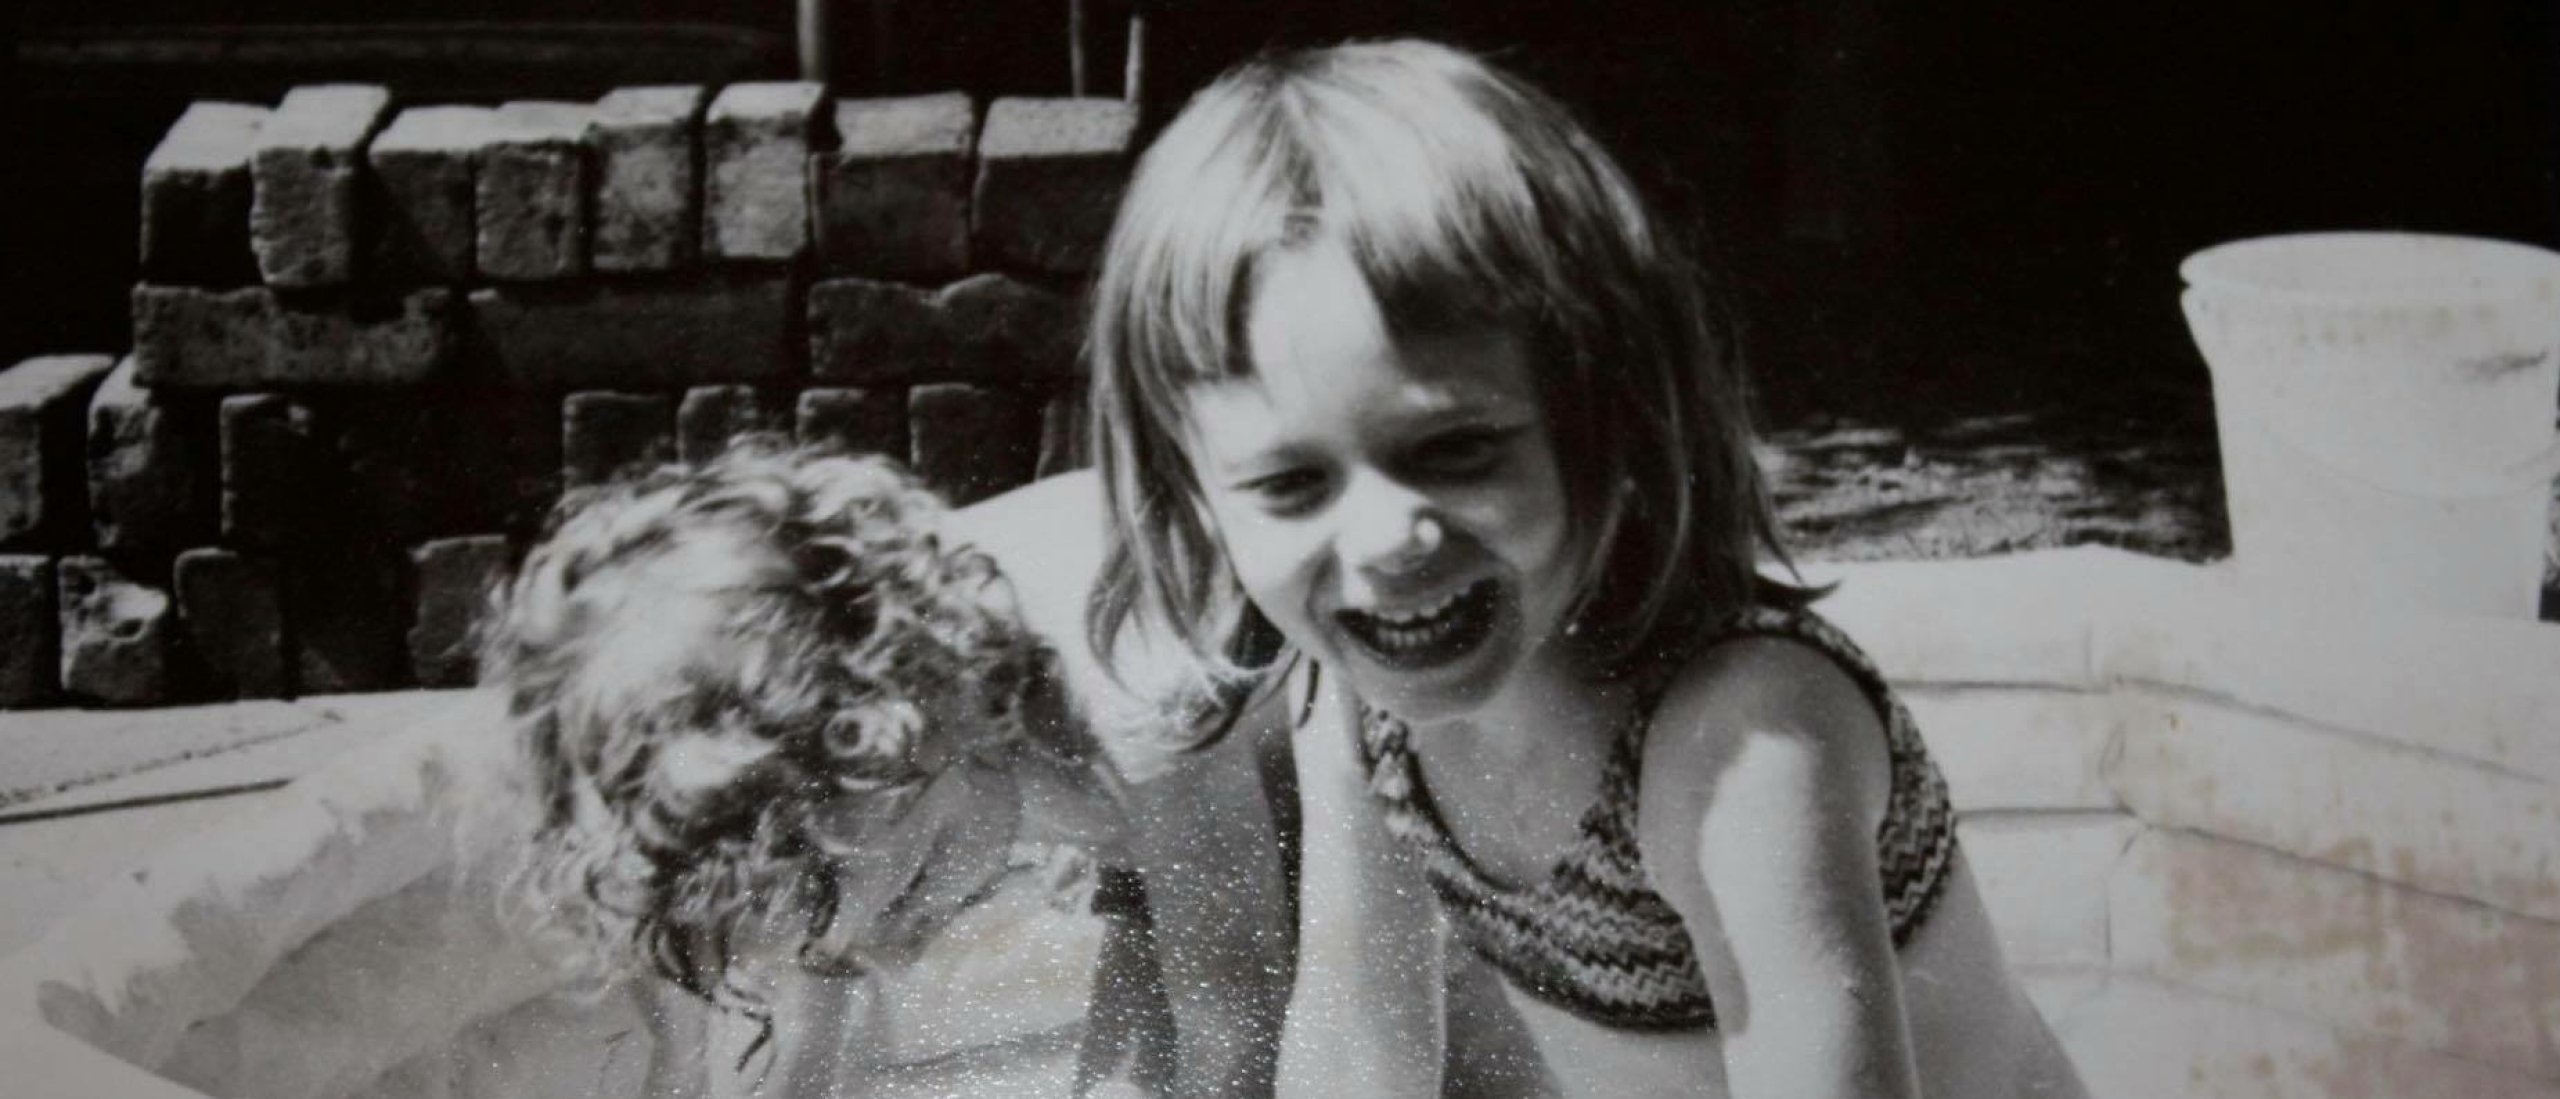 De kindertijd van Marie Louise Linnemijer - 50 jaar #40